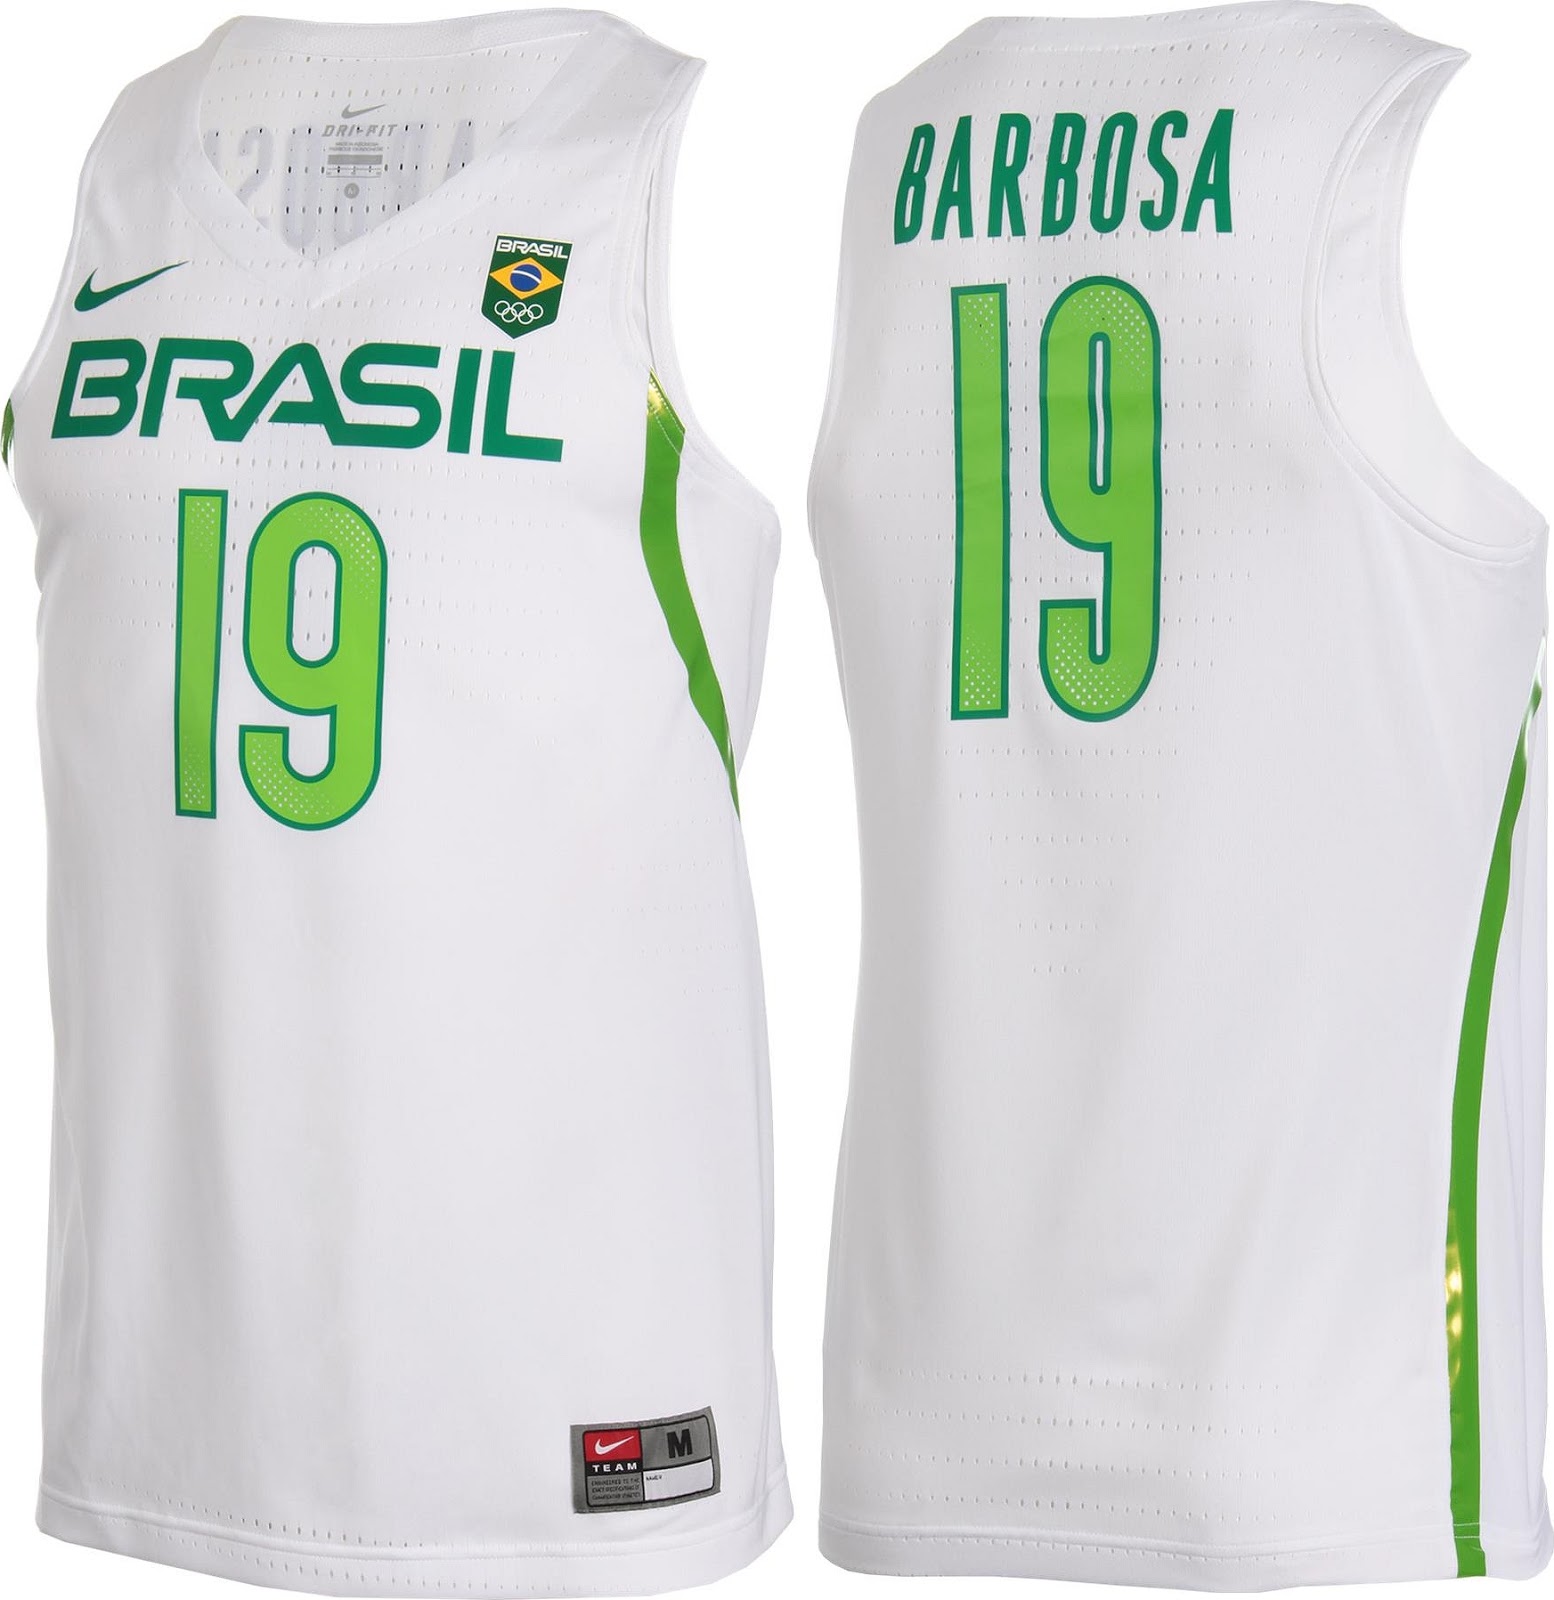 Nike lança uniformes de basquete do Brasil para Rio 2016 ...